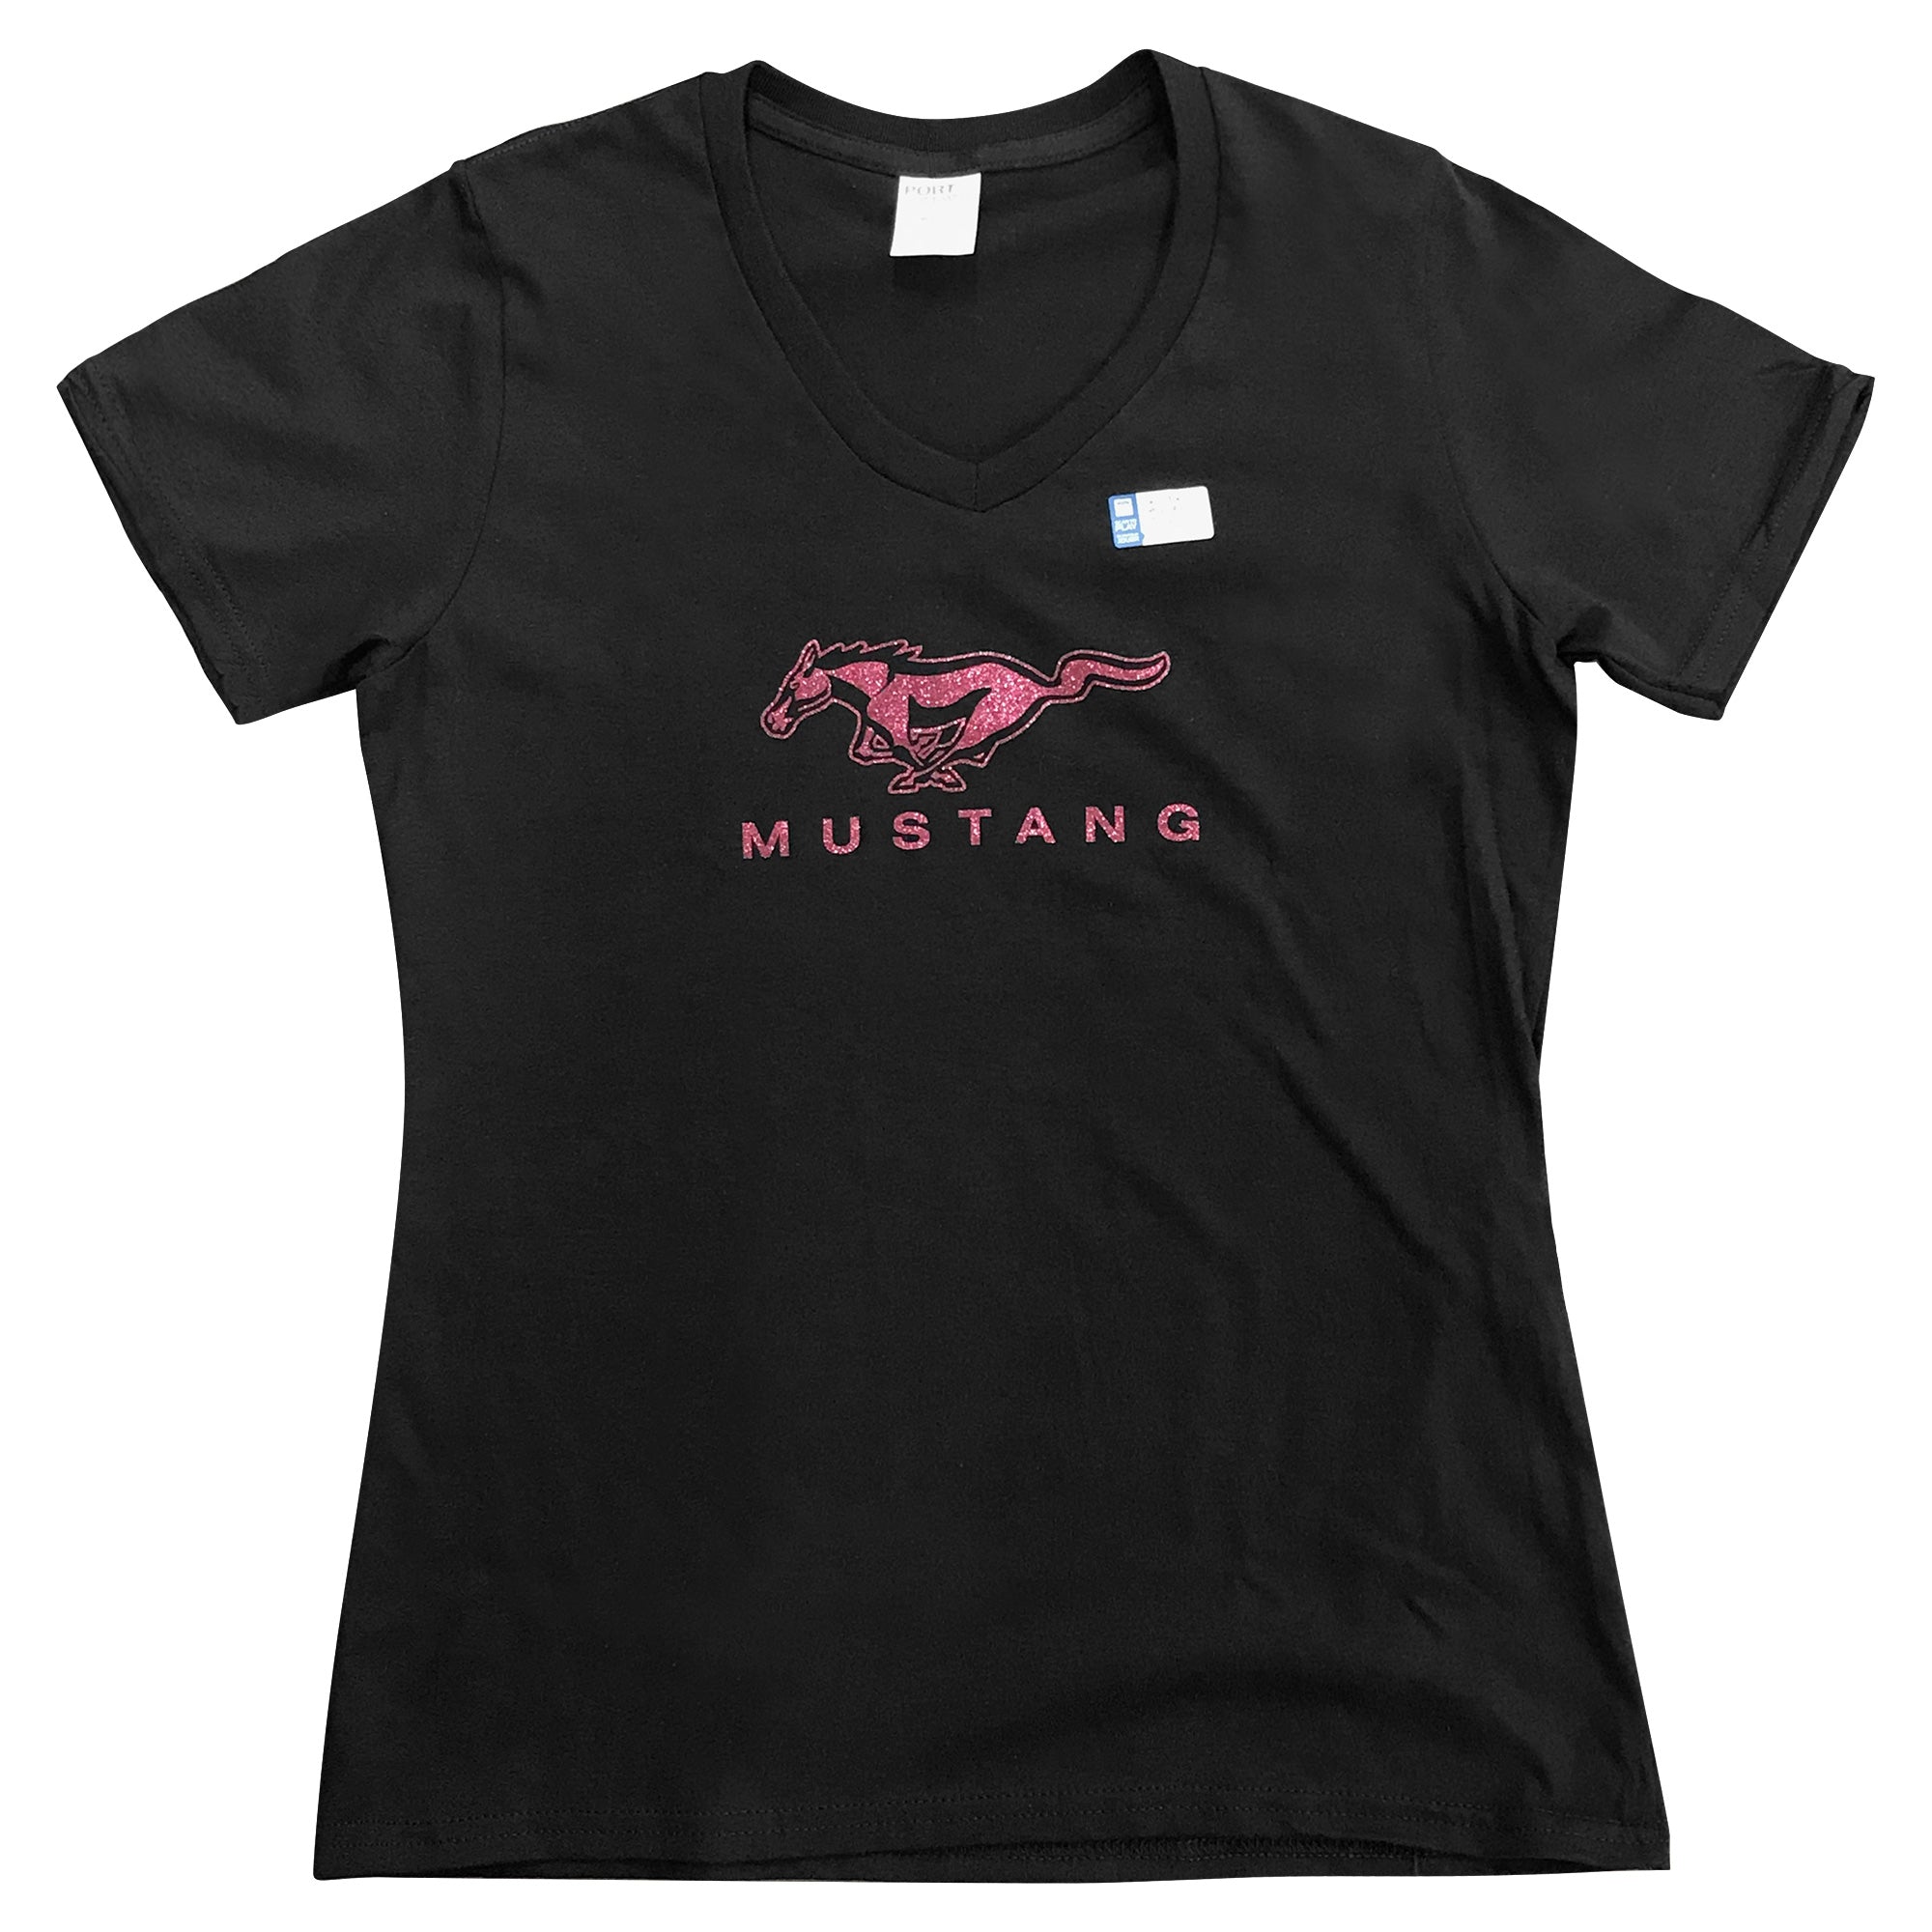 Mustang Women's T-Shirt